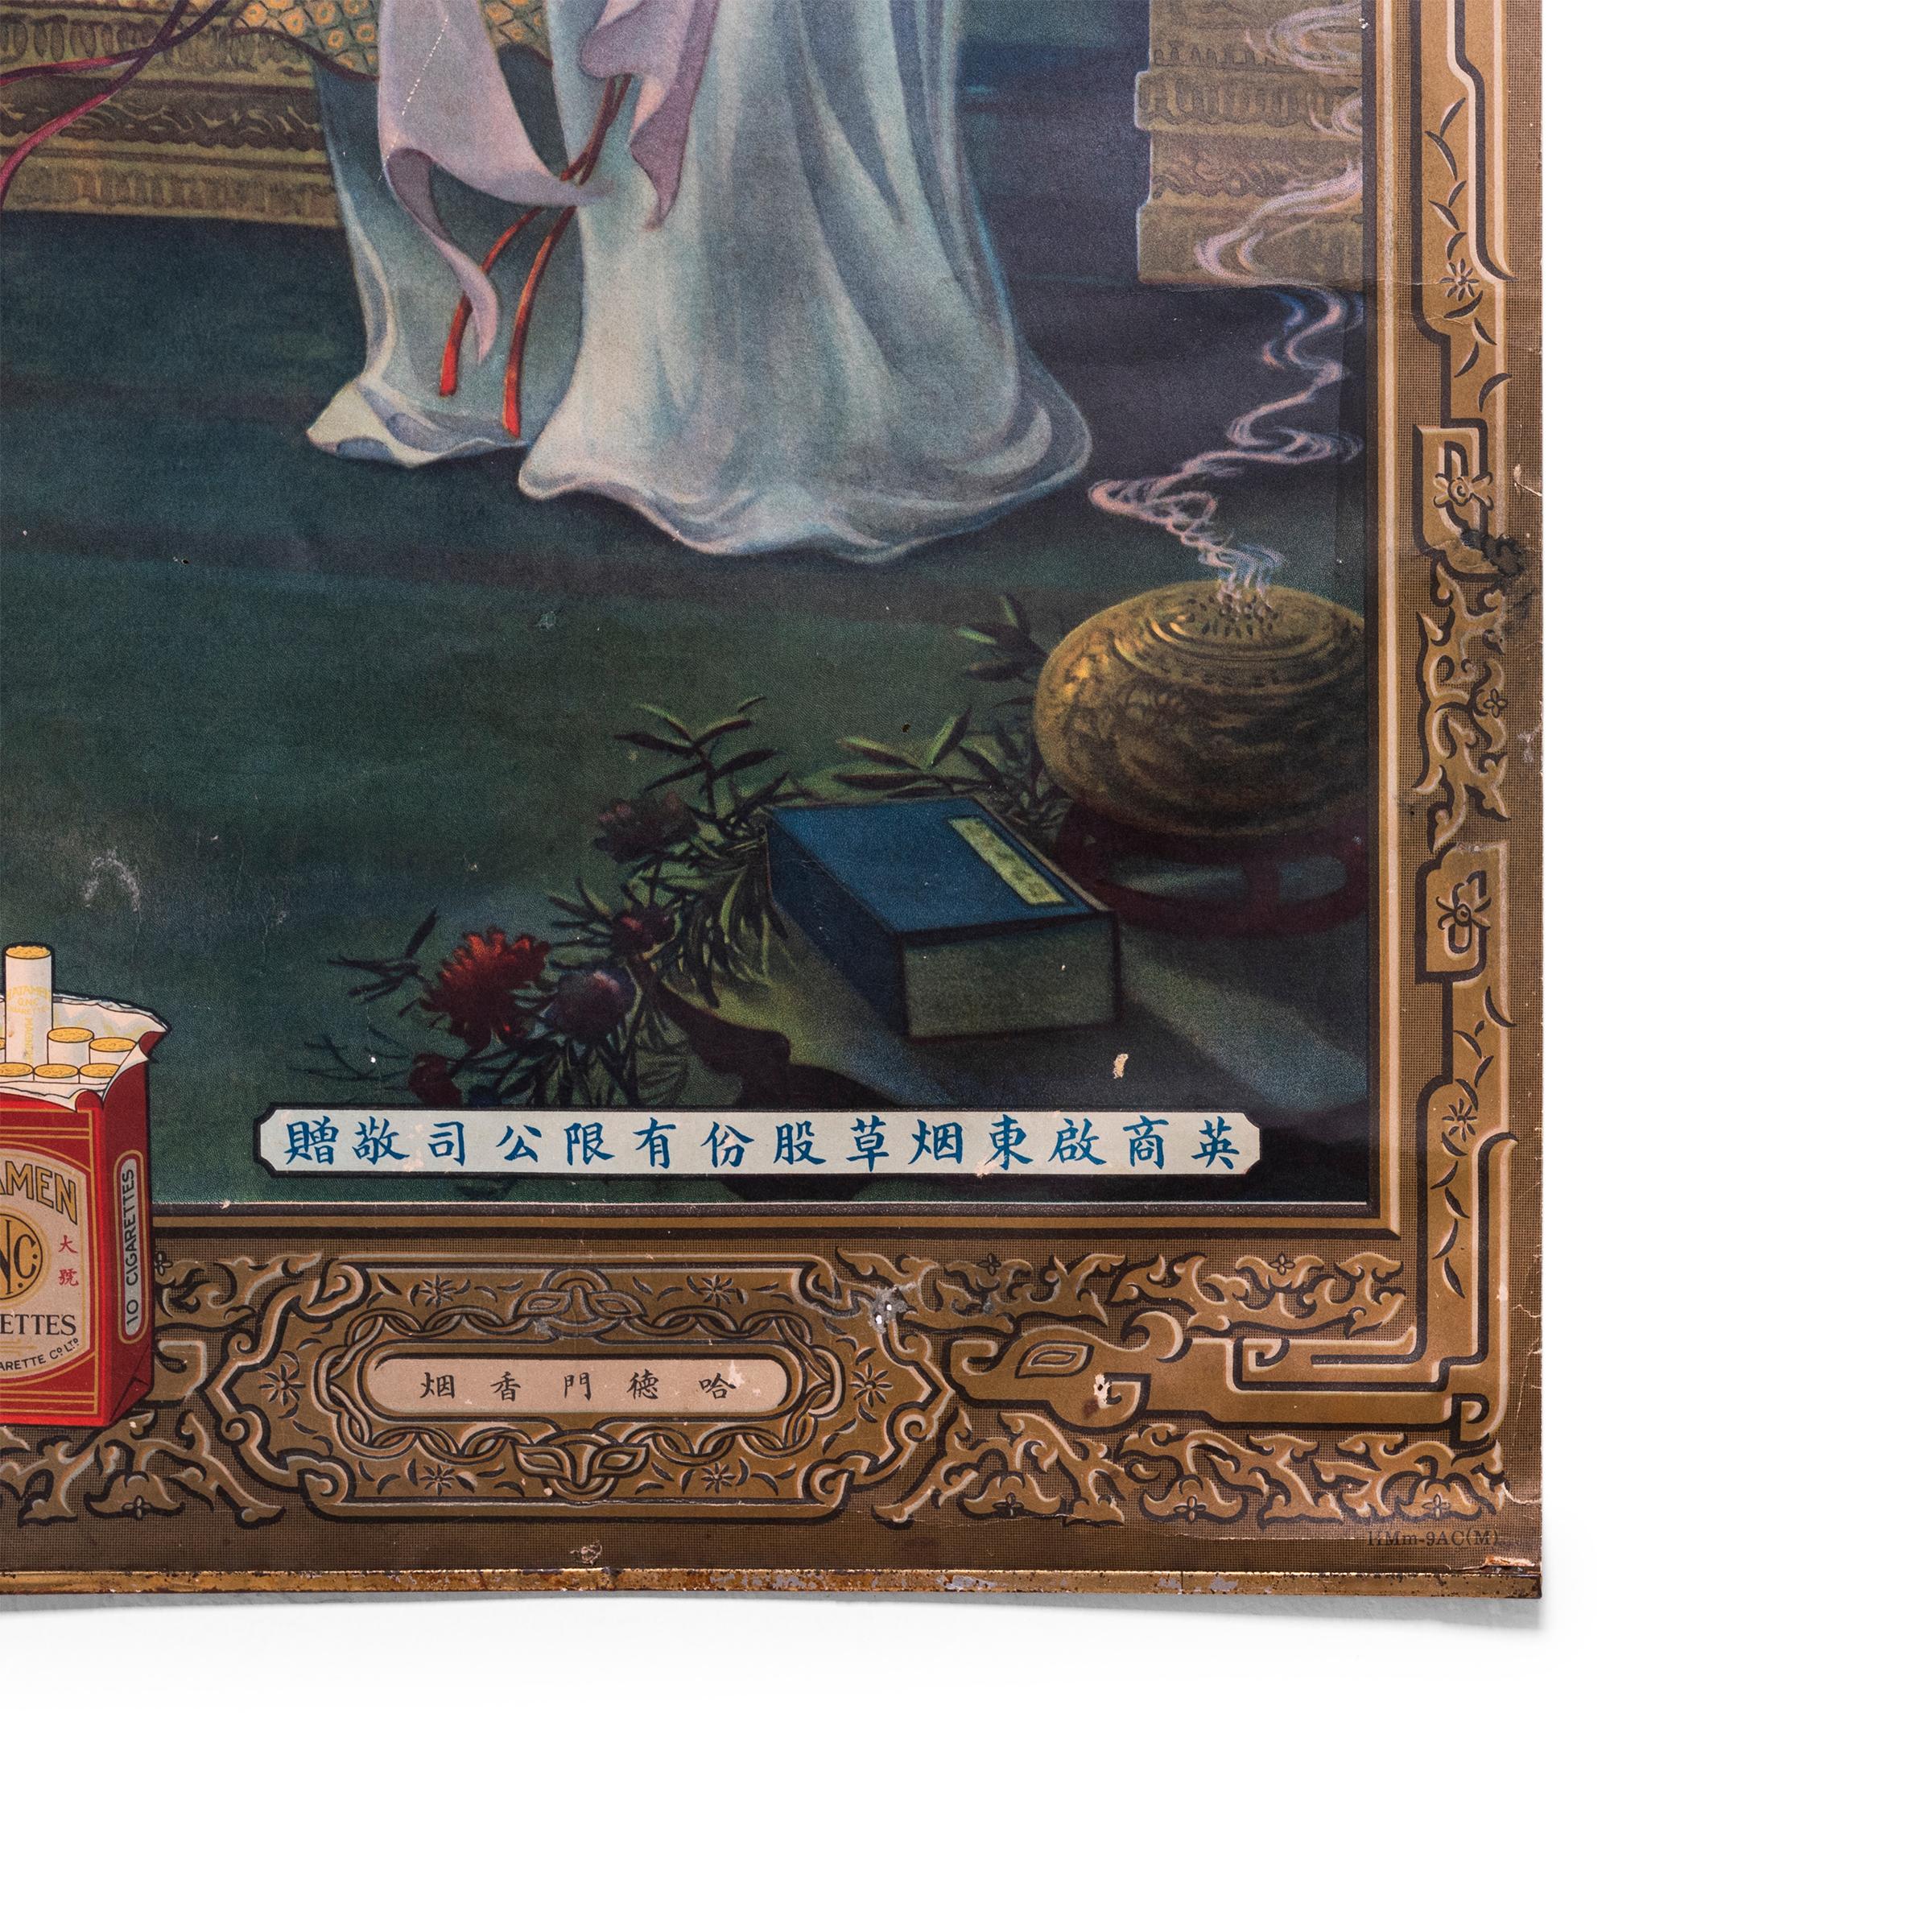 Avec son produit discrètement situé en bas à gauche, cette affiche de Shanghai du début du XXe siècle pour les cigarettes Hatamen utilise une image au rendu dramatique pour capter l'attention du public. Imprimée dans les années 1930, cette affiche